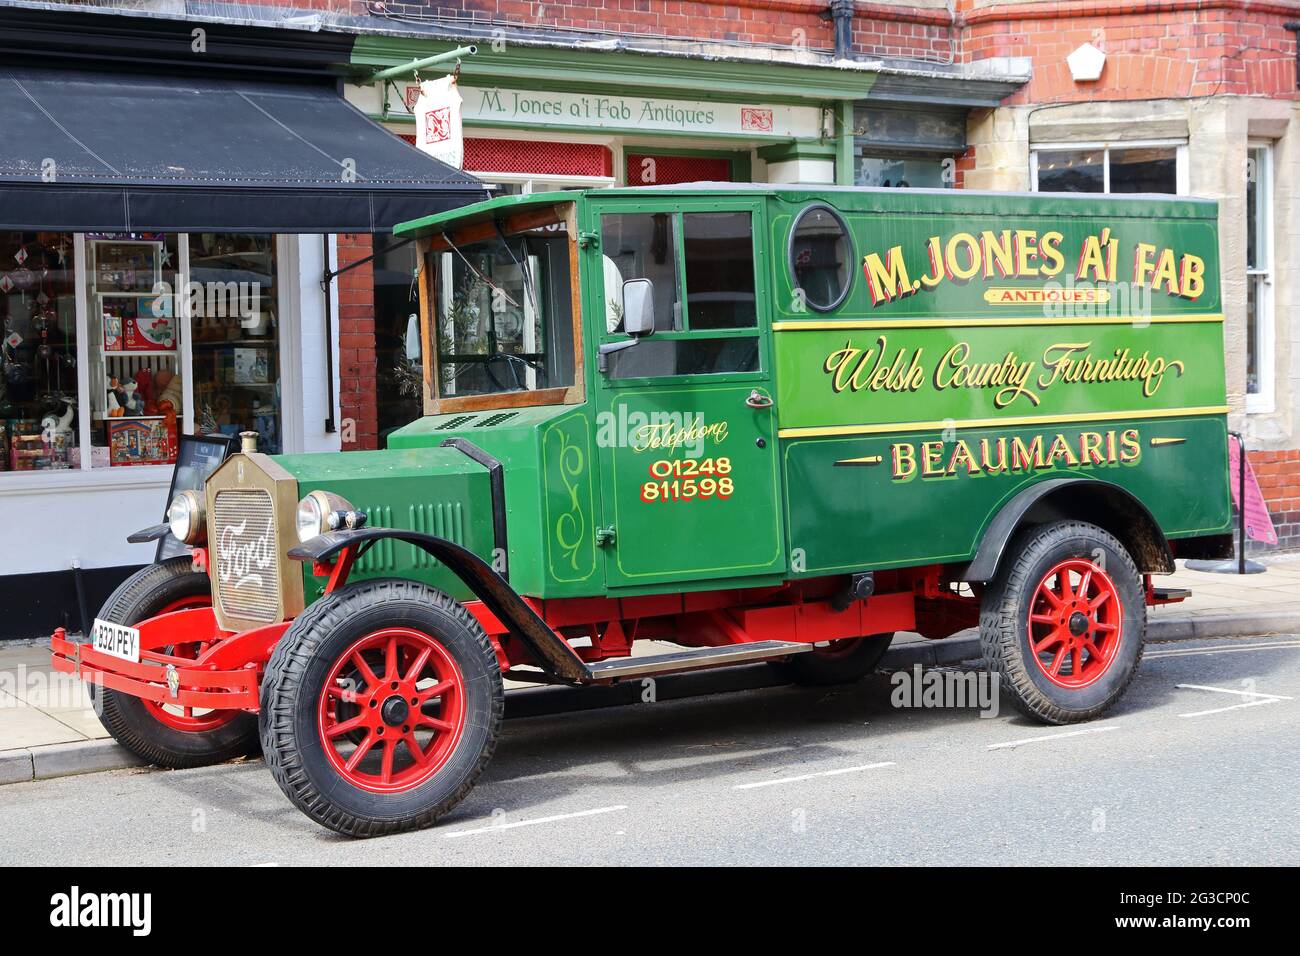 M Jones ai fab, antique dealers van parked outside shop, Beaumaris Stock Photo